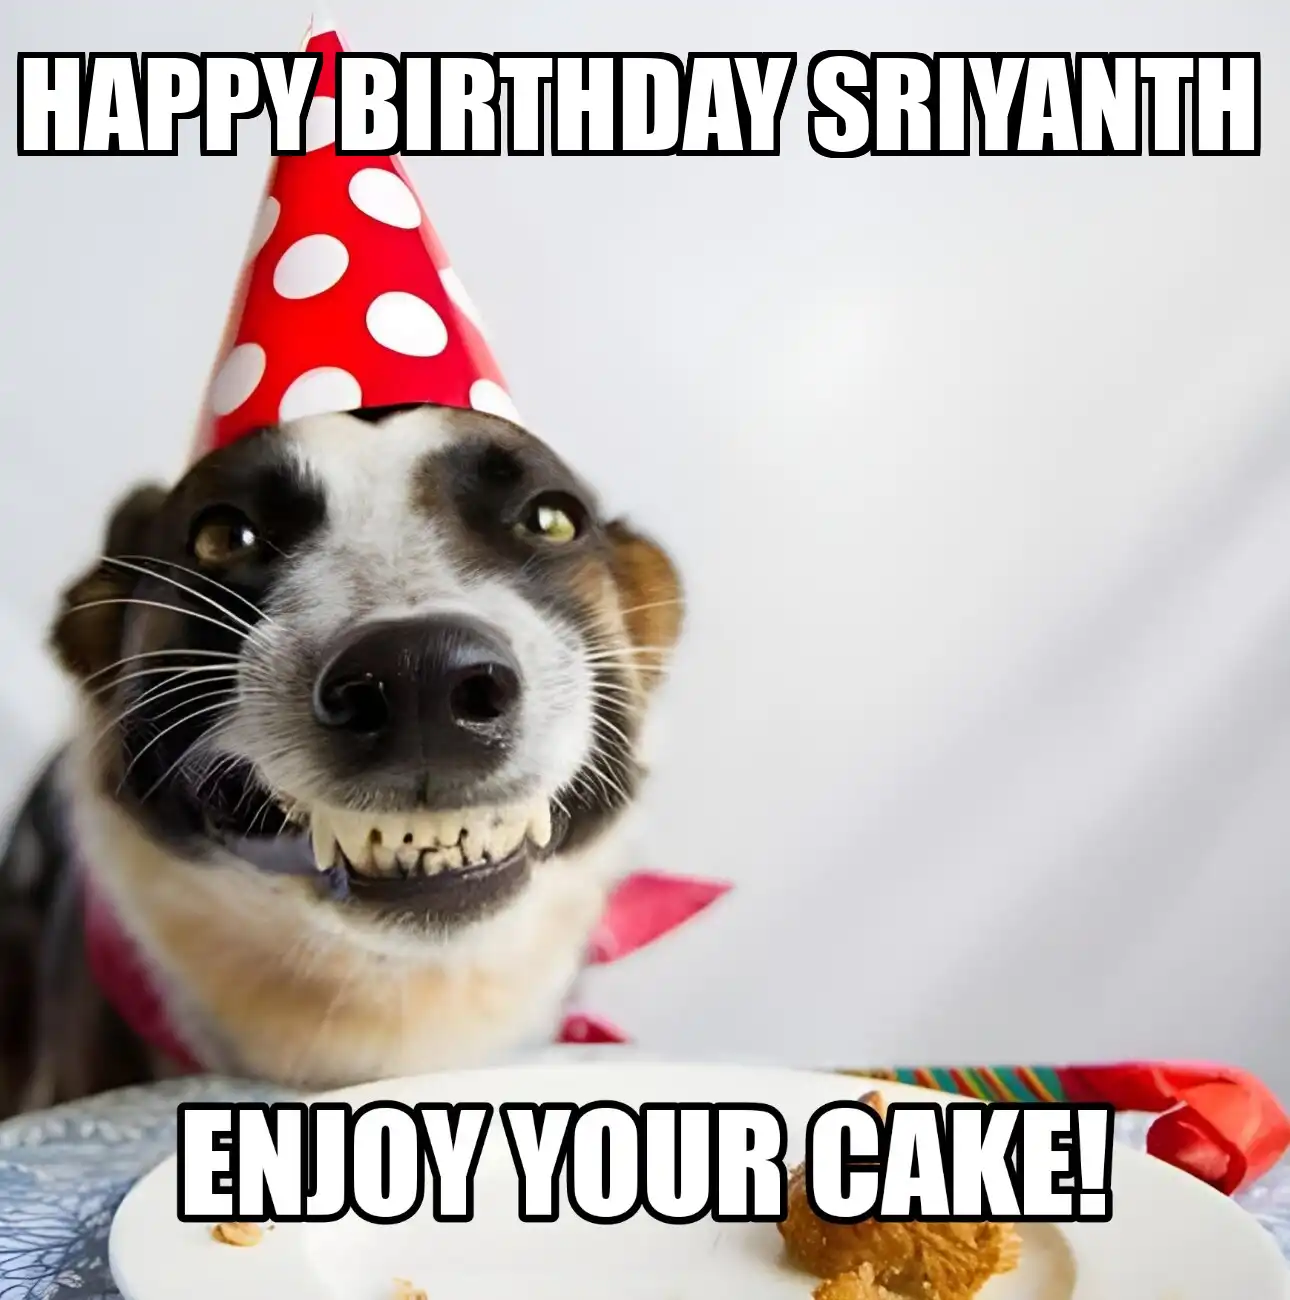 Happy Birthday Sriyanth Enjoy Your Cake Dog Meme